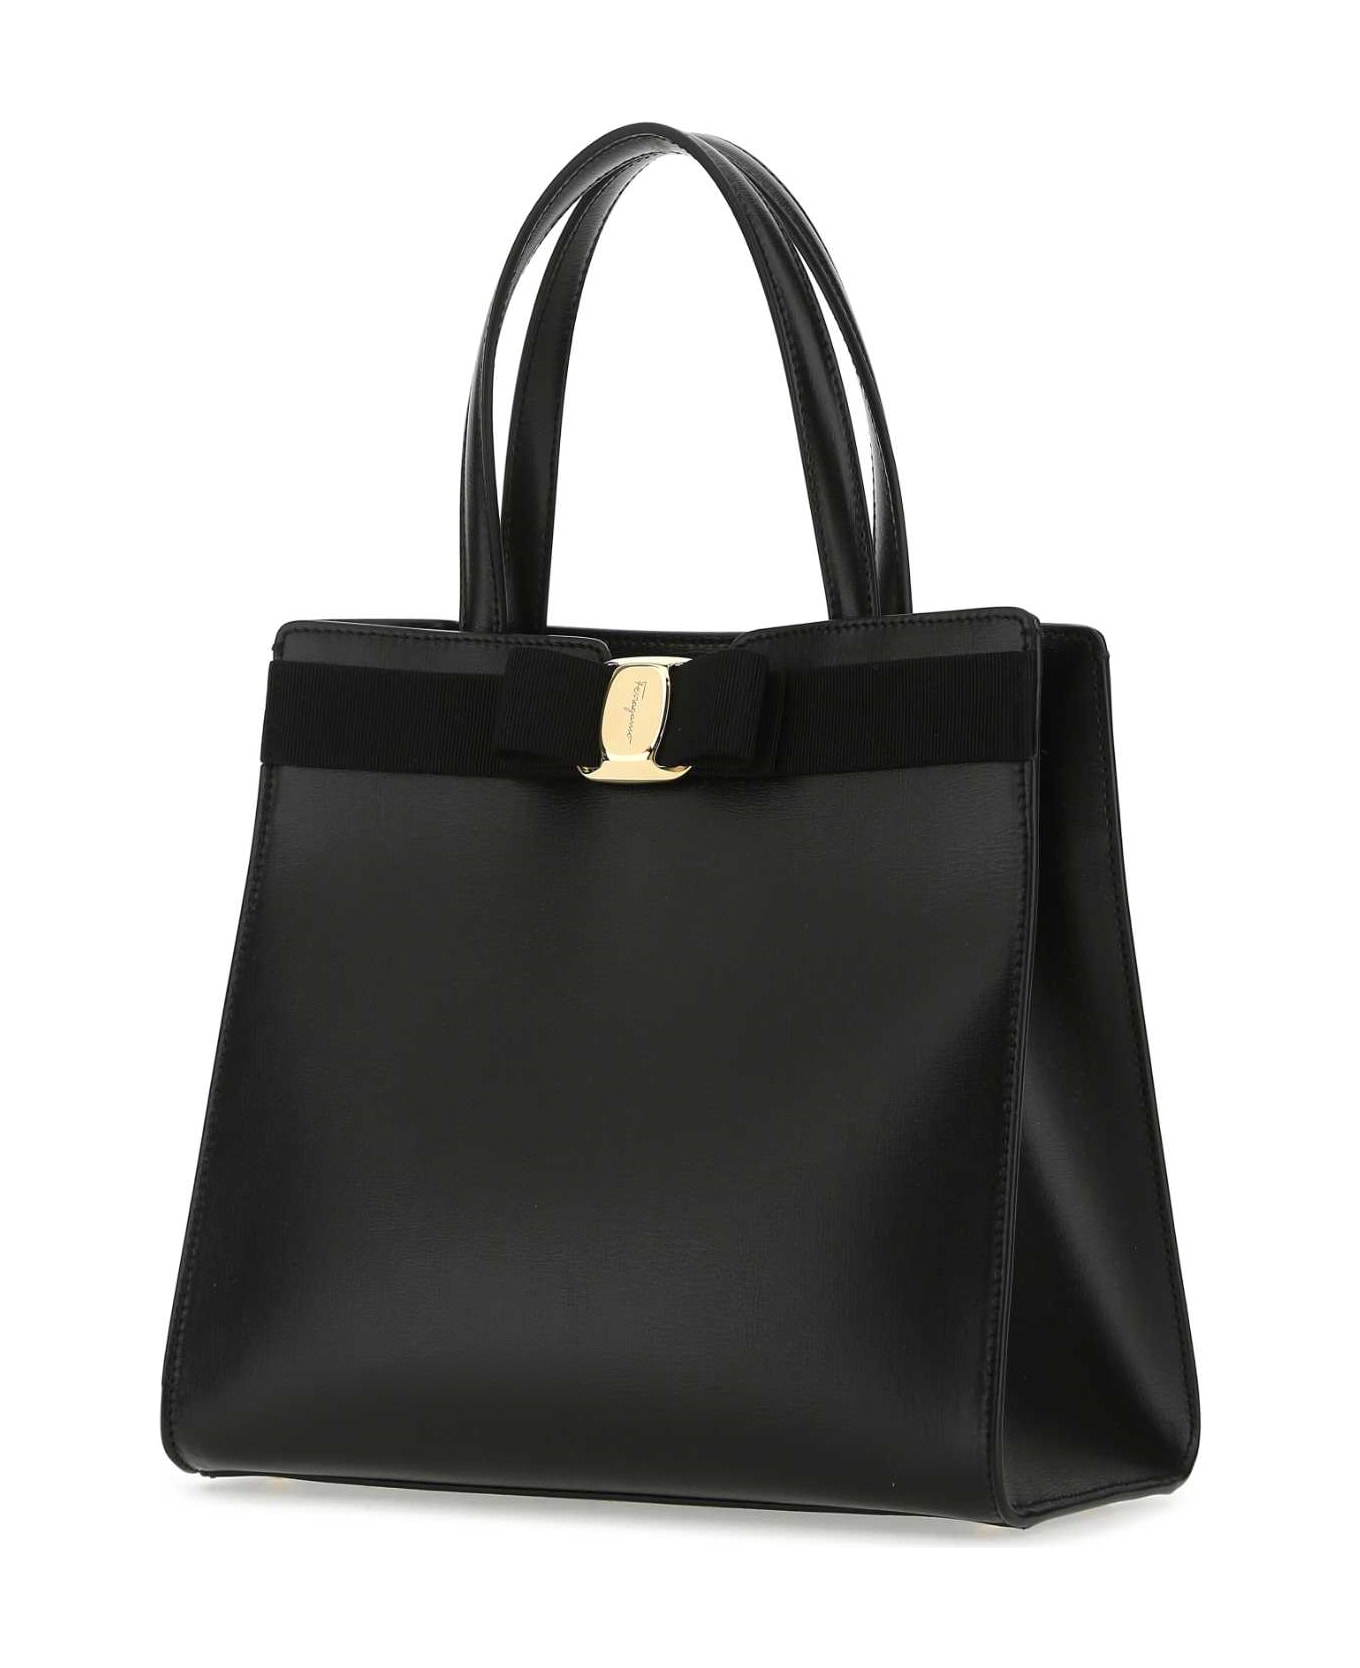 Ferragamo Black Leather Handbag - NERO